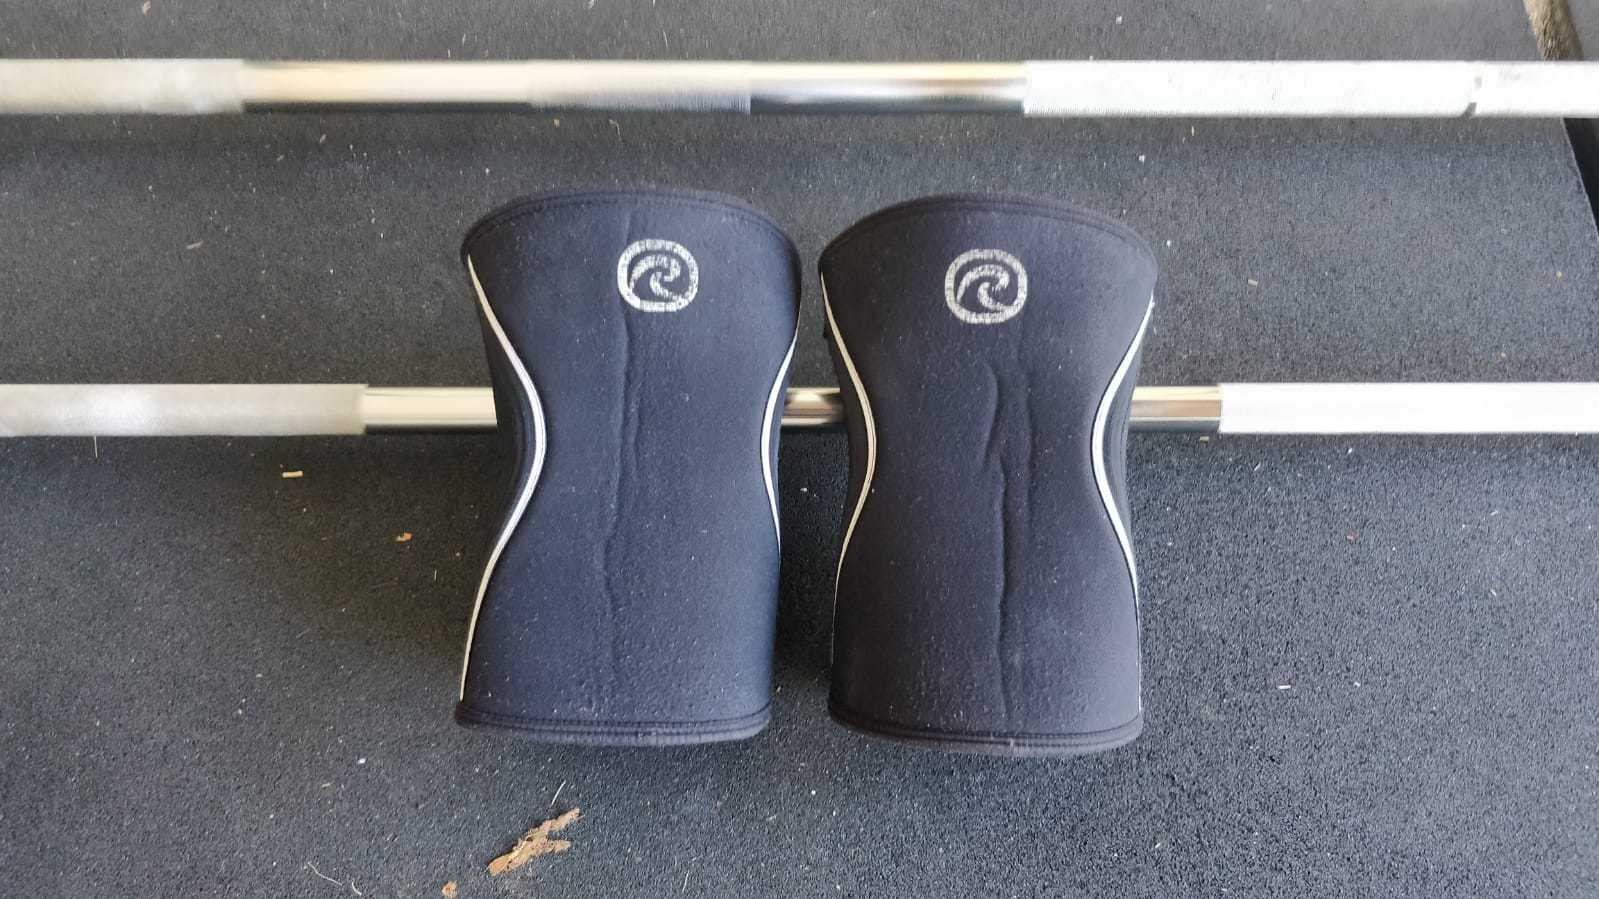 Rehband Knee Sleeves 5mm vs 7mm